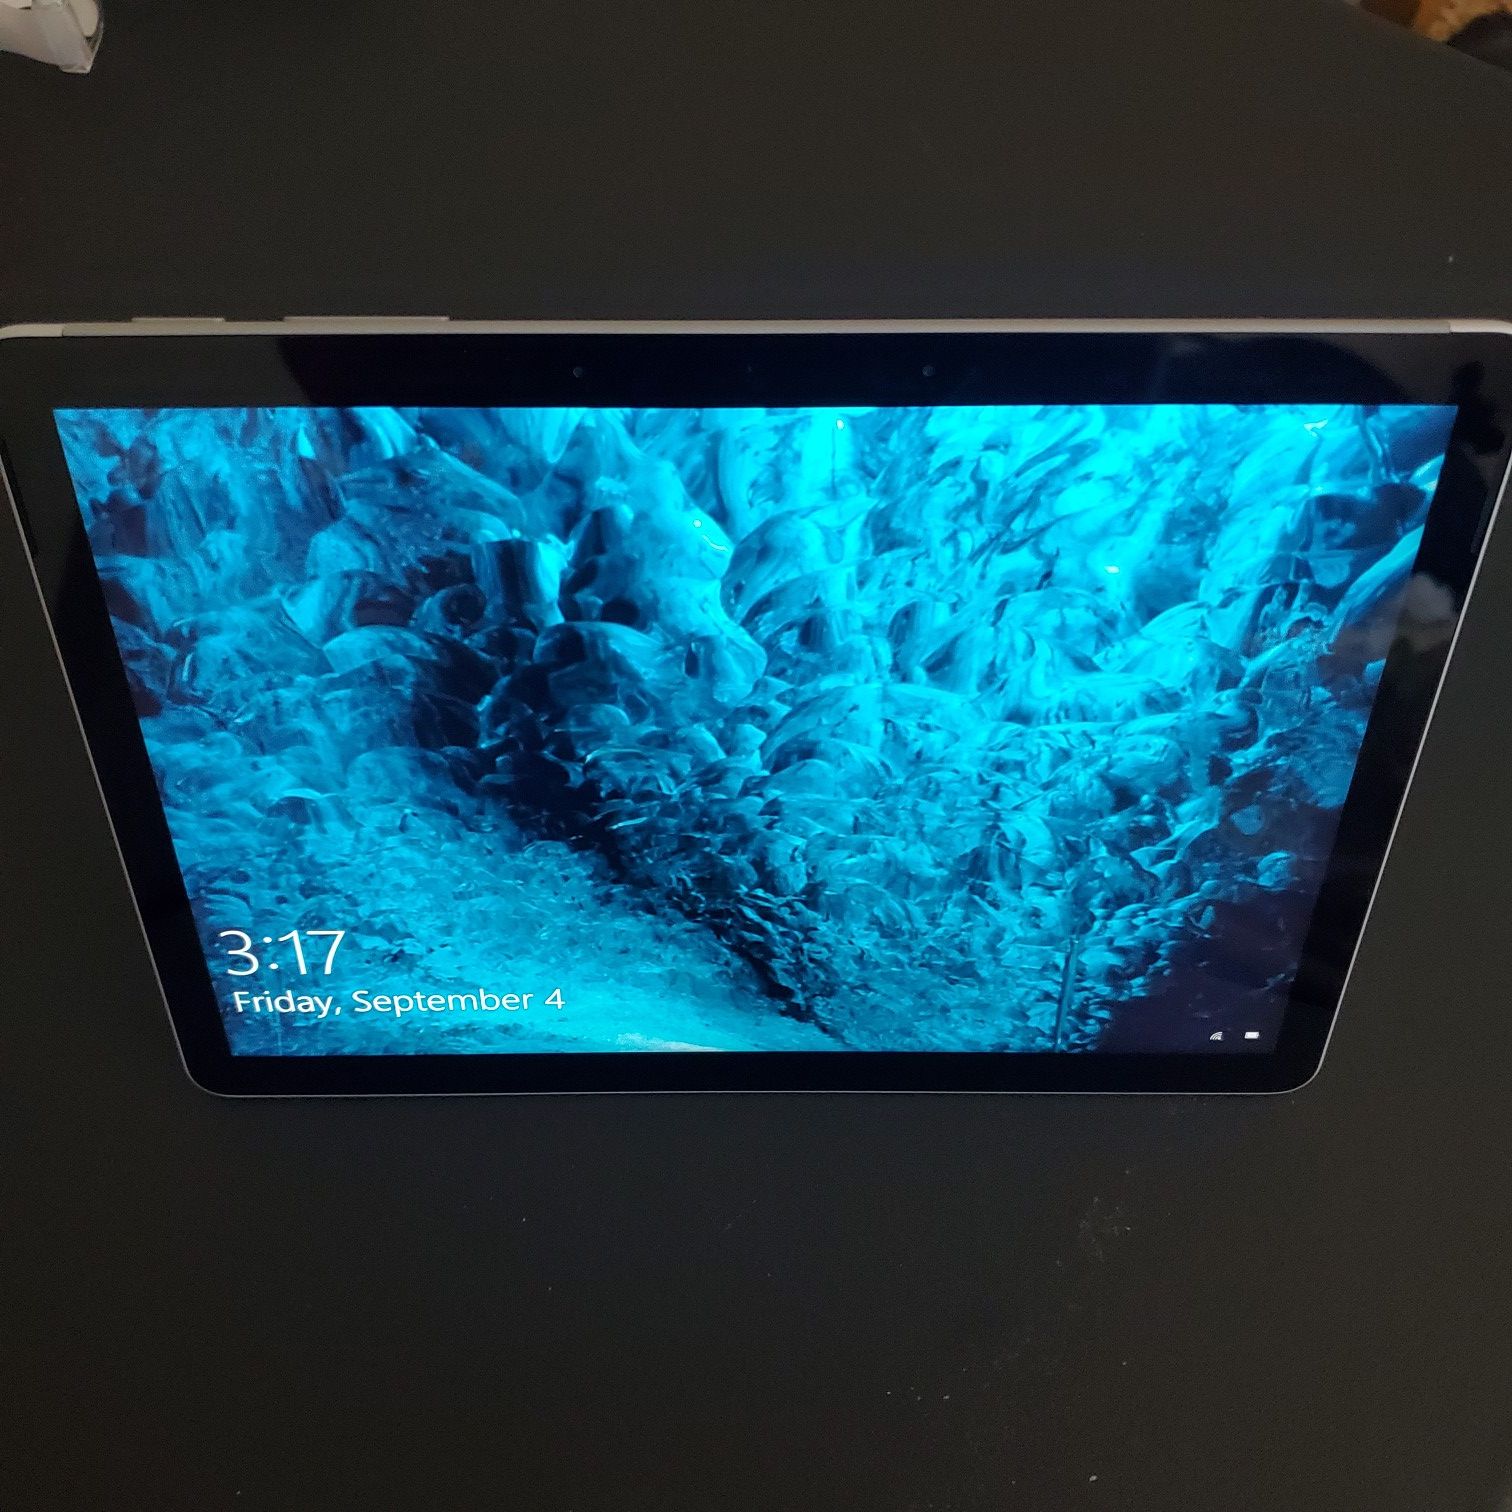 Surface Go 2